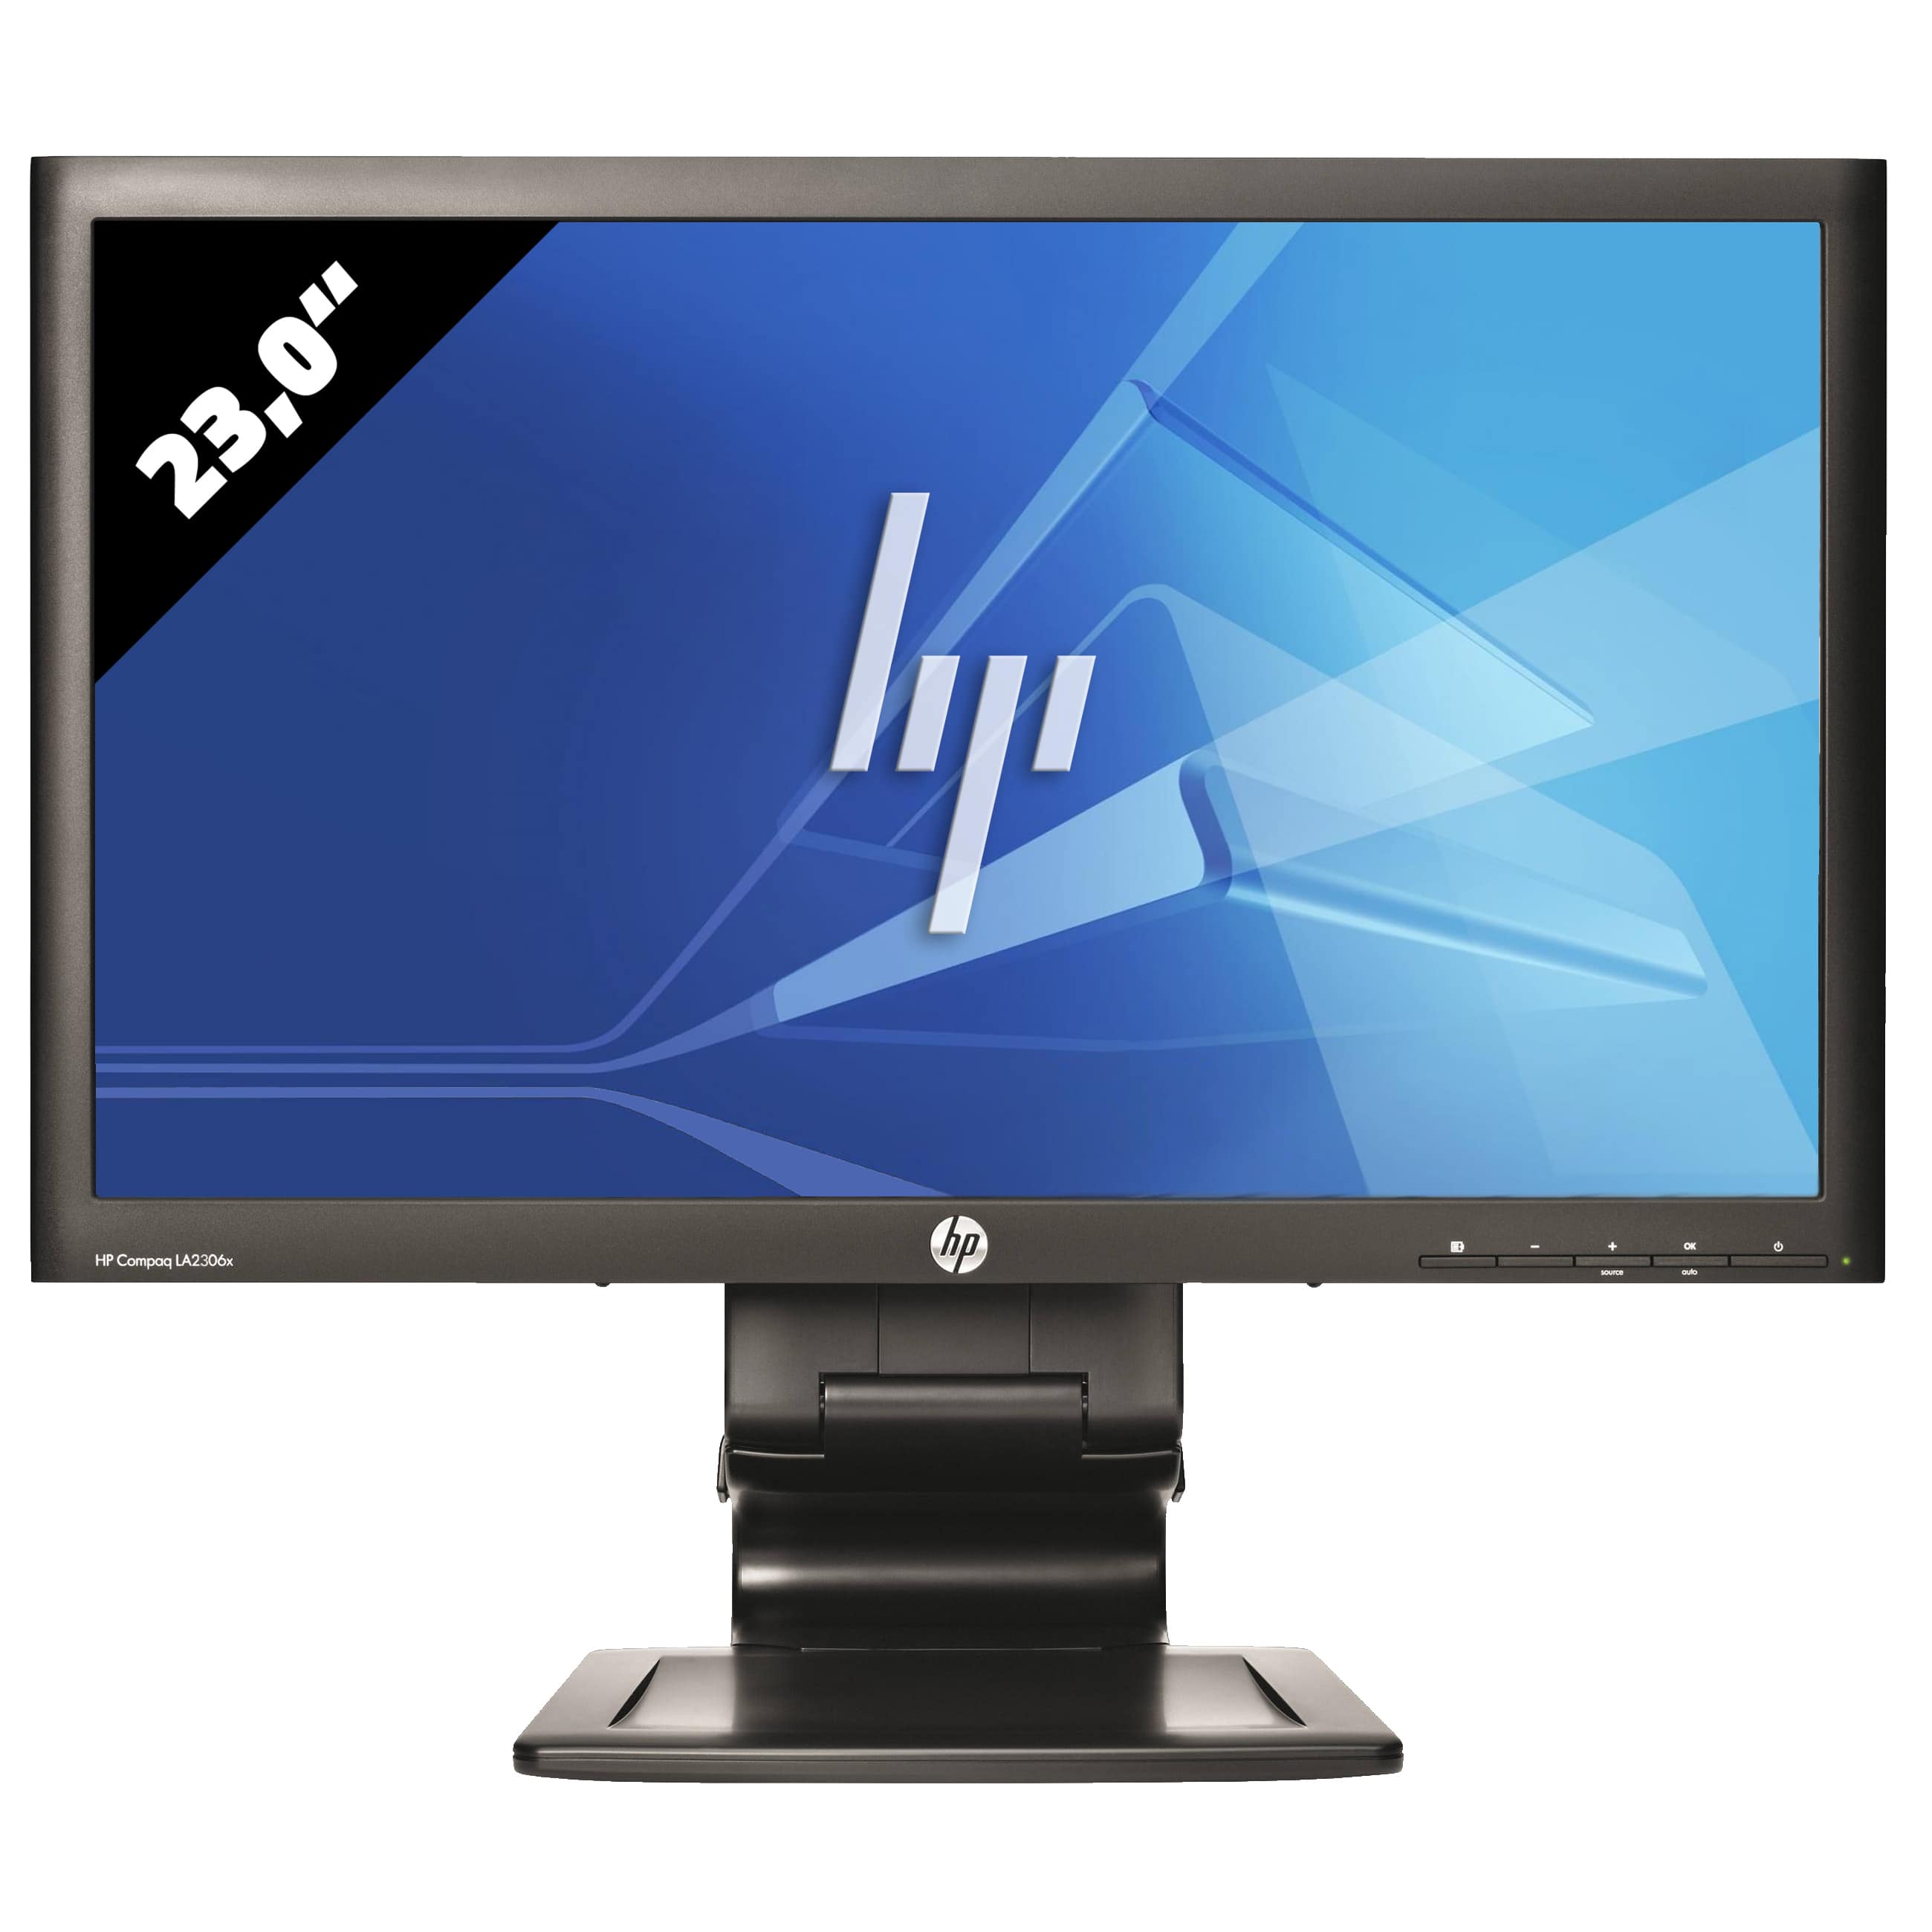 HP Compaq LA 2306x - 23,0 Zoll - 1920 x 1080 FHD - 5 ms - Schwarz